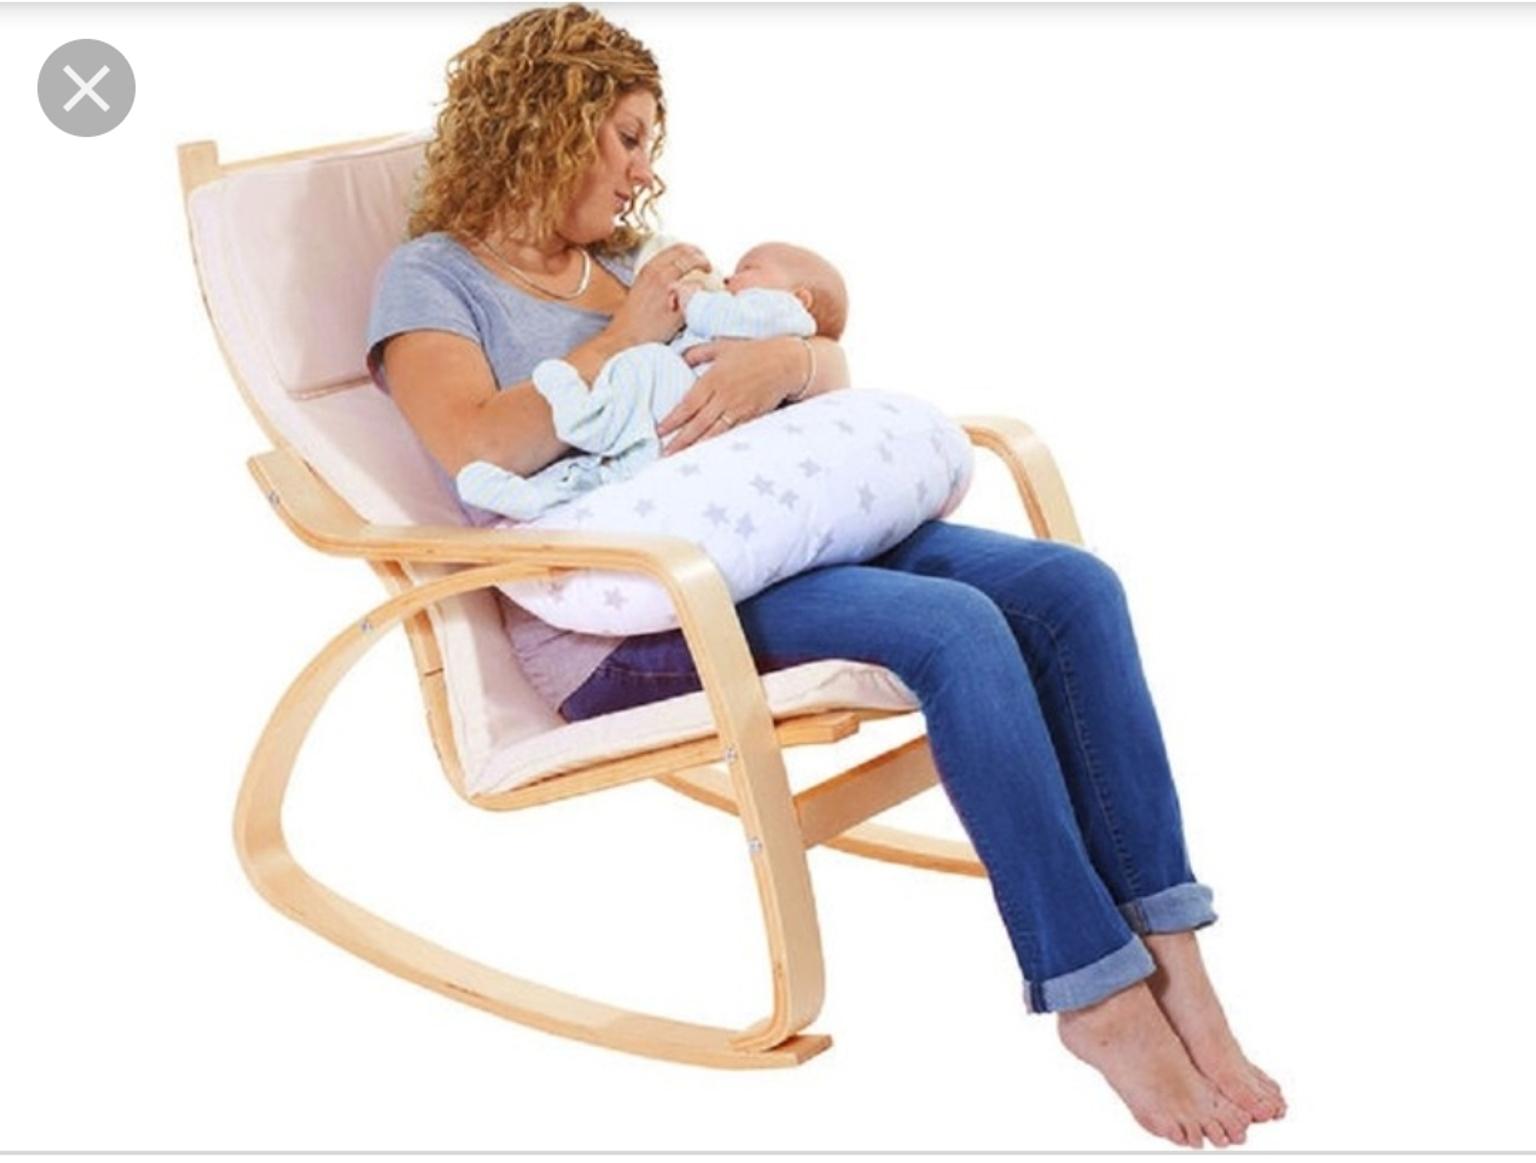 удобное кресло для кормления для мамы